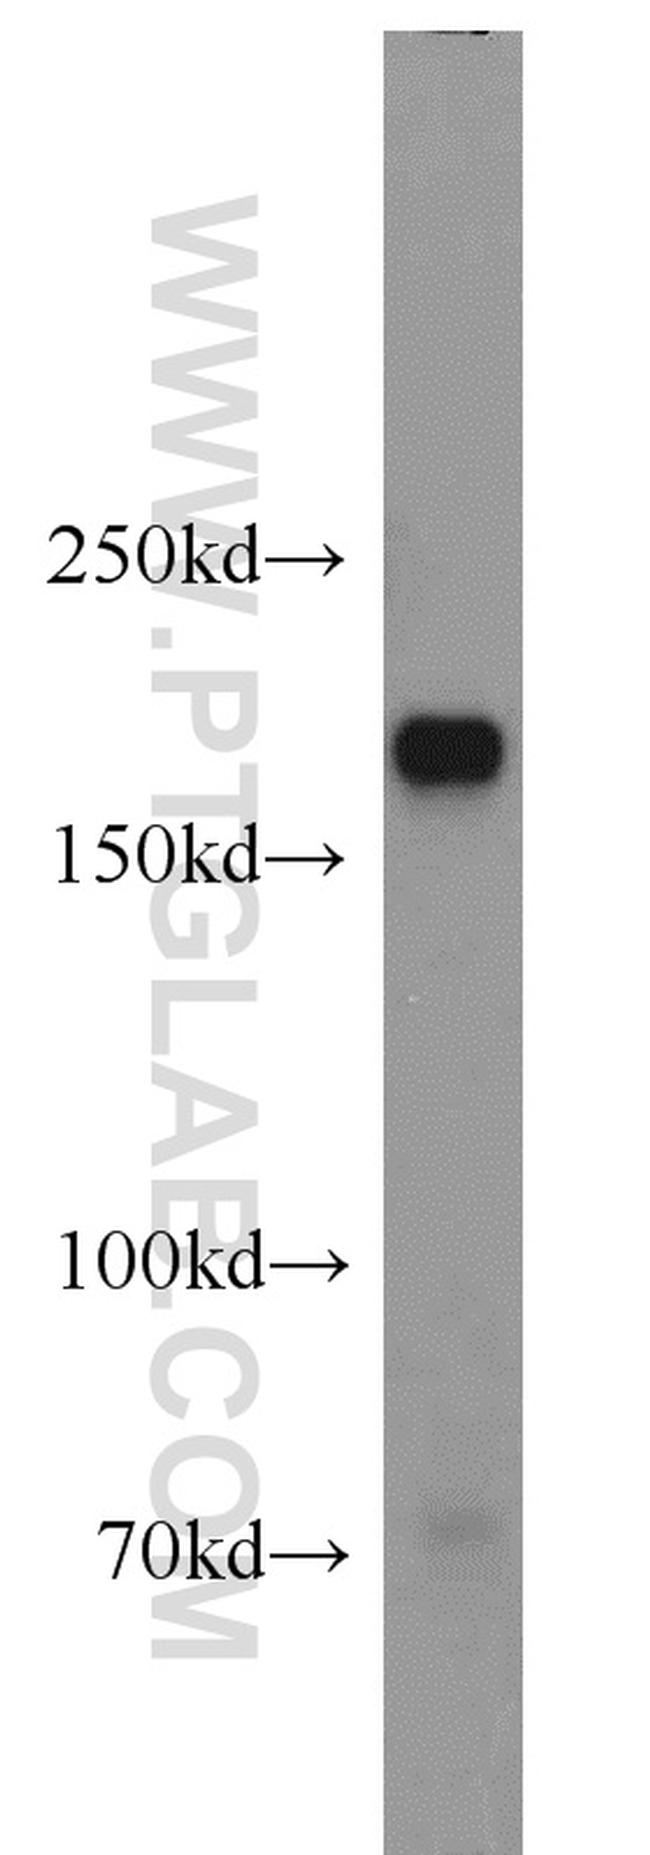 Integrin alpha-1 Antibody in Western Blot (WB)